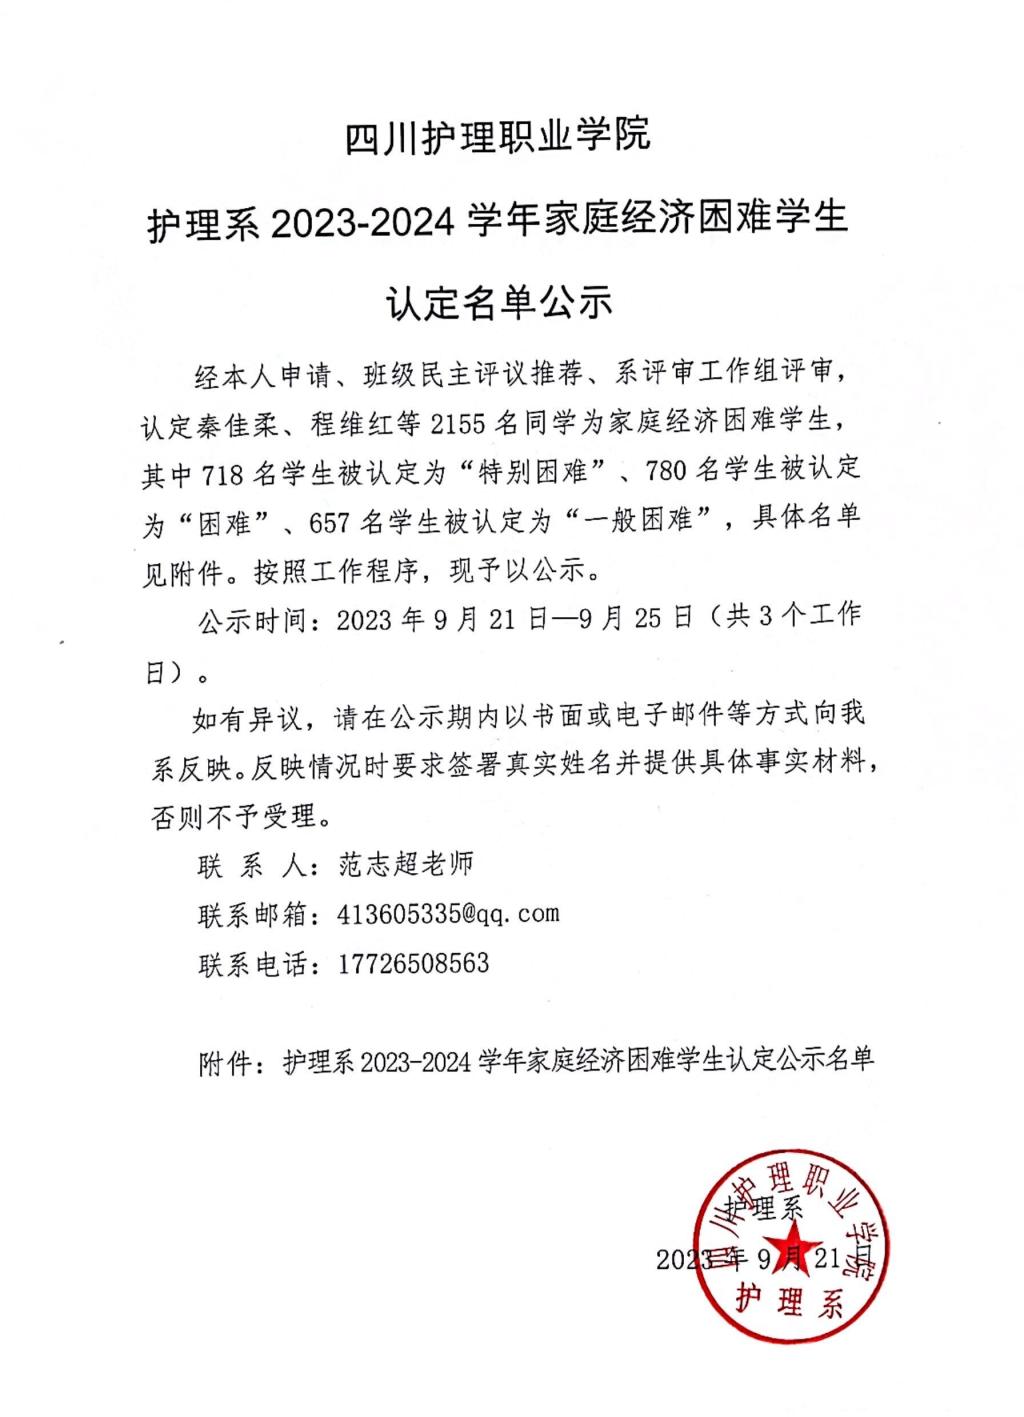 四川护理职业学院护理系2023-2024学年家庭经济困难学生认定名单公示 